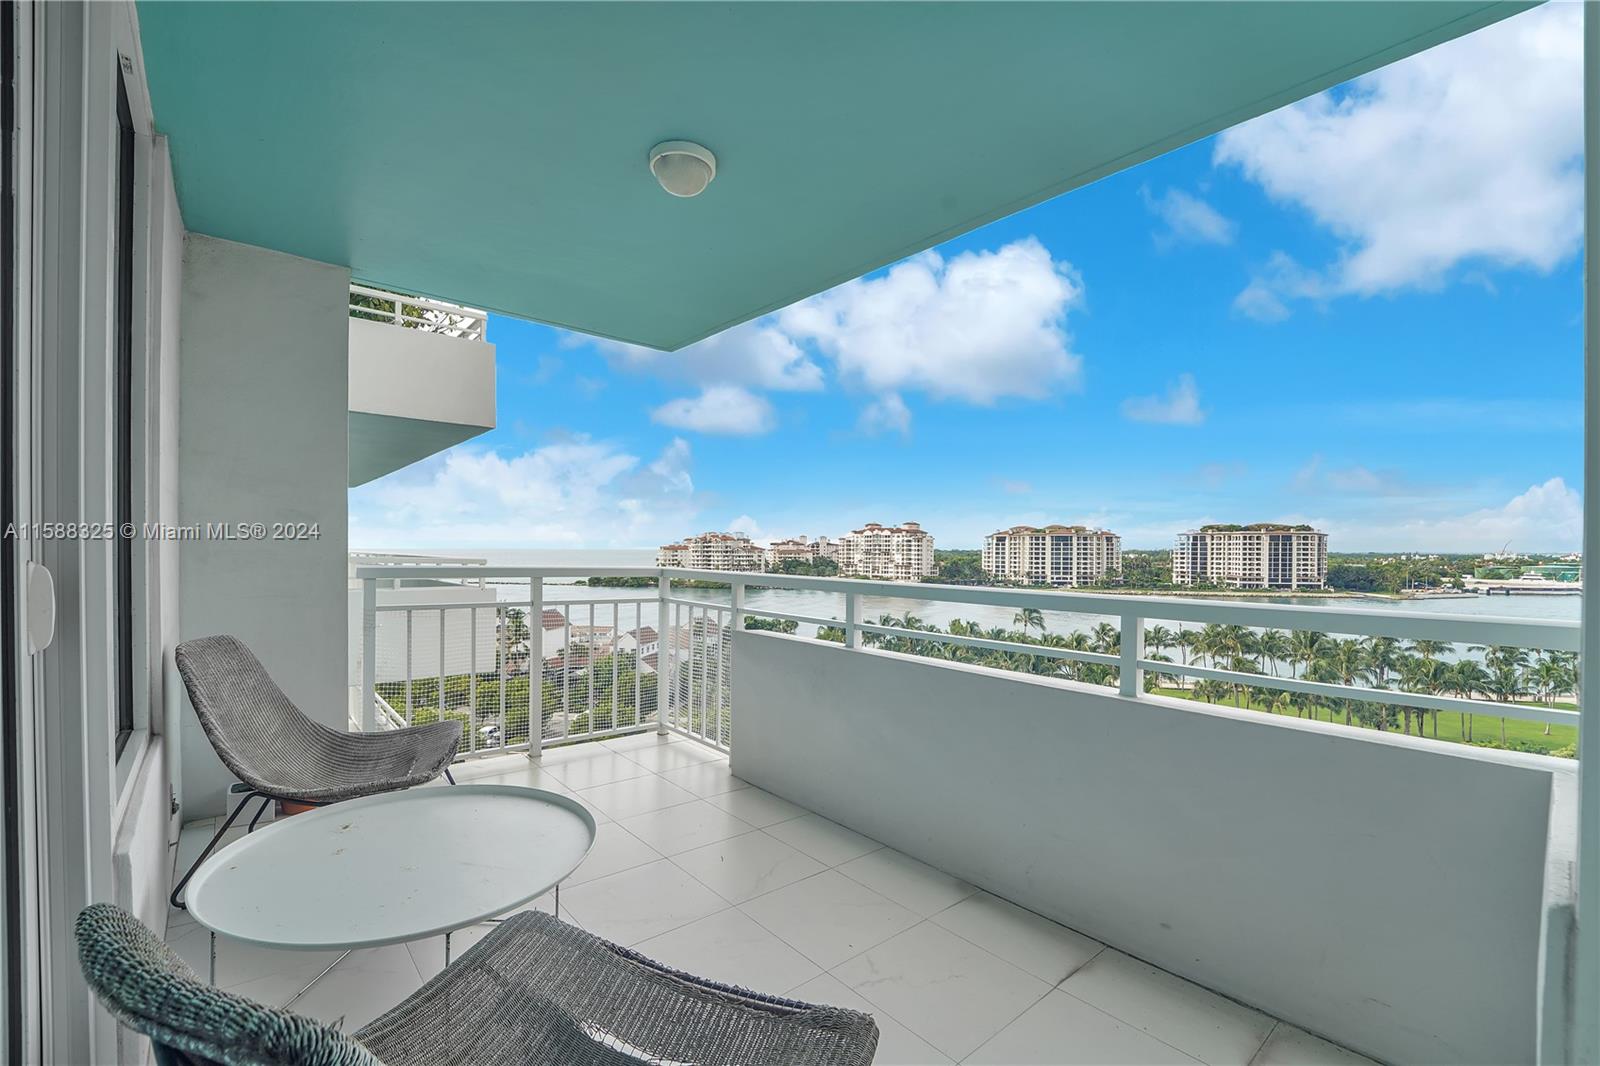 Rental Property at 400 S Pointe Dr 901, Miami Beach, Miami-Dade County, Florida - Bedrooms: 2 
Bathrooms: 2  - $7,900 MO.